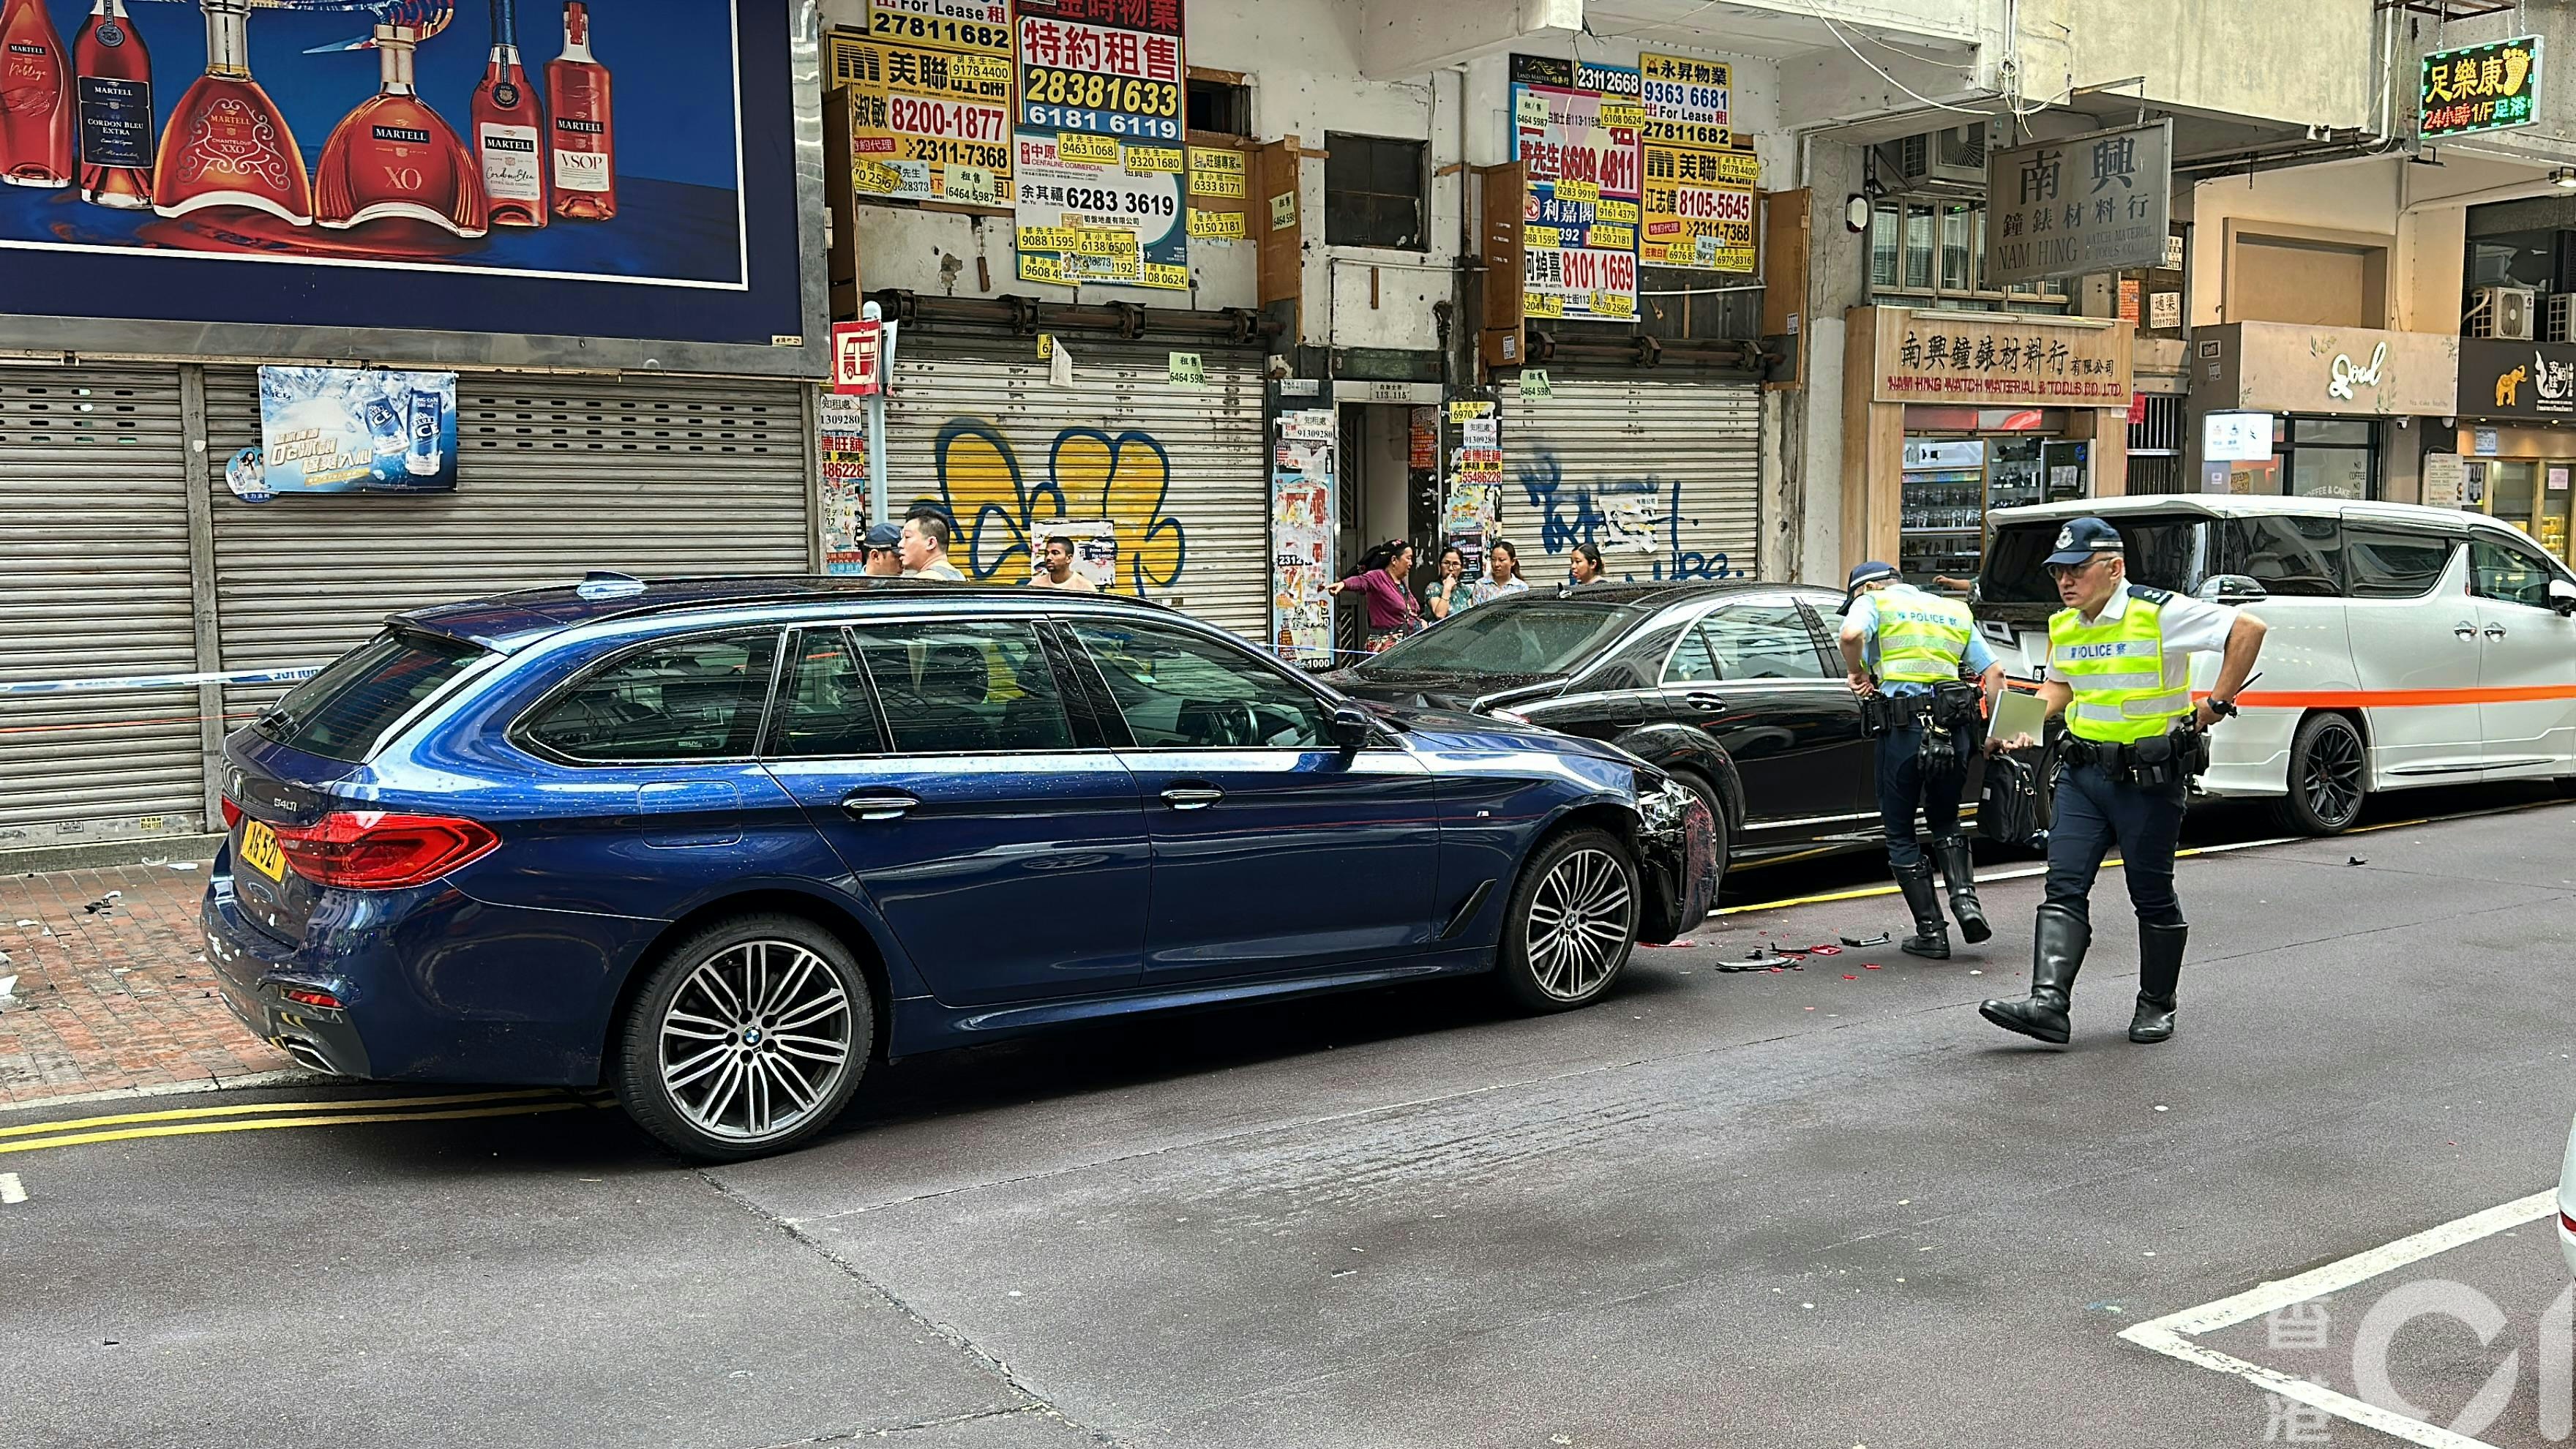 最终蓝色宝马撞向两部停泊在路边的私家车后才停下。（马耀文摄）